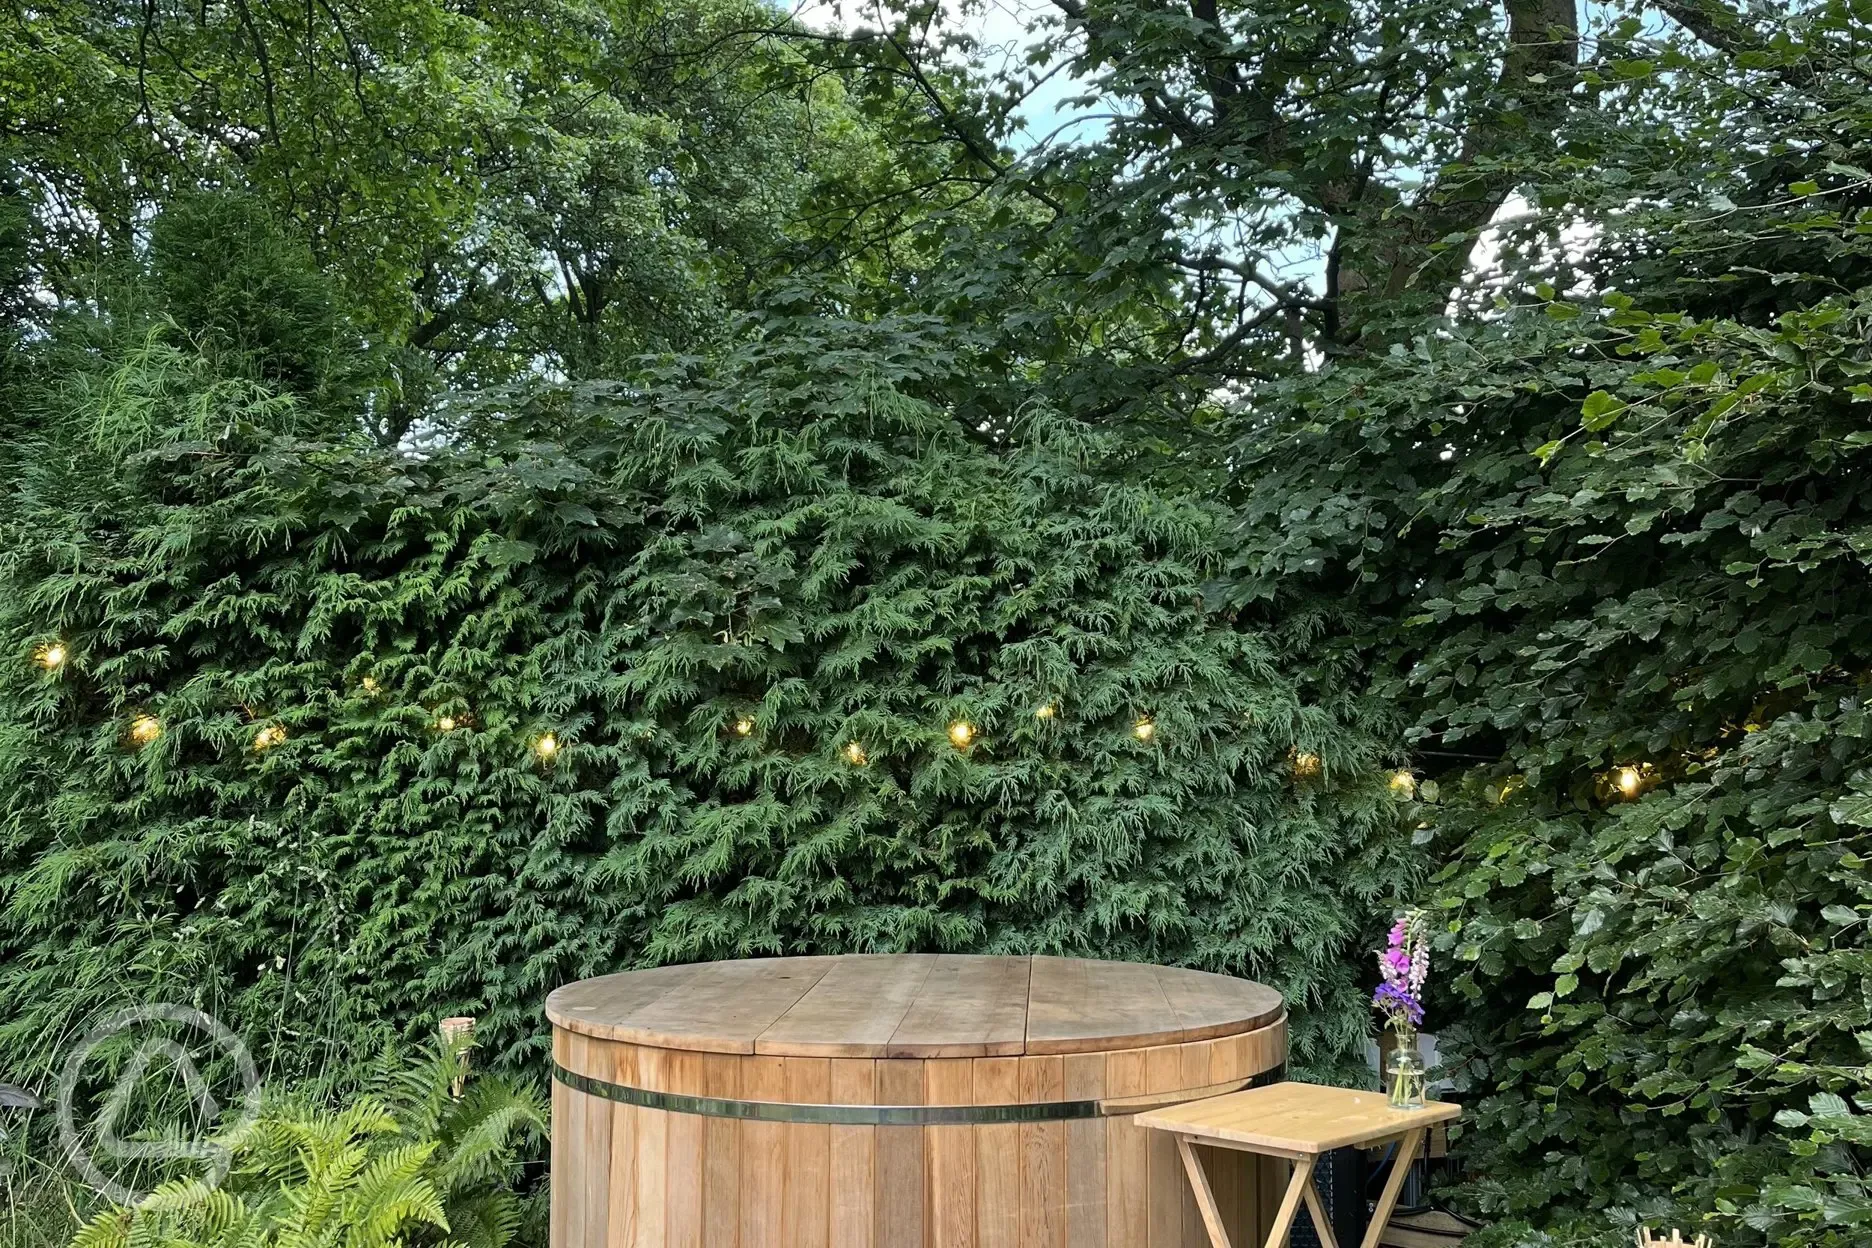 The garden cabin's hot tub